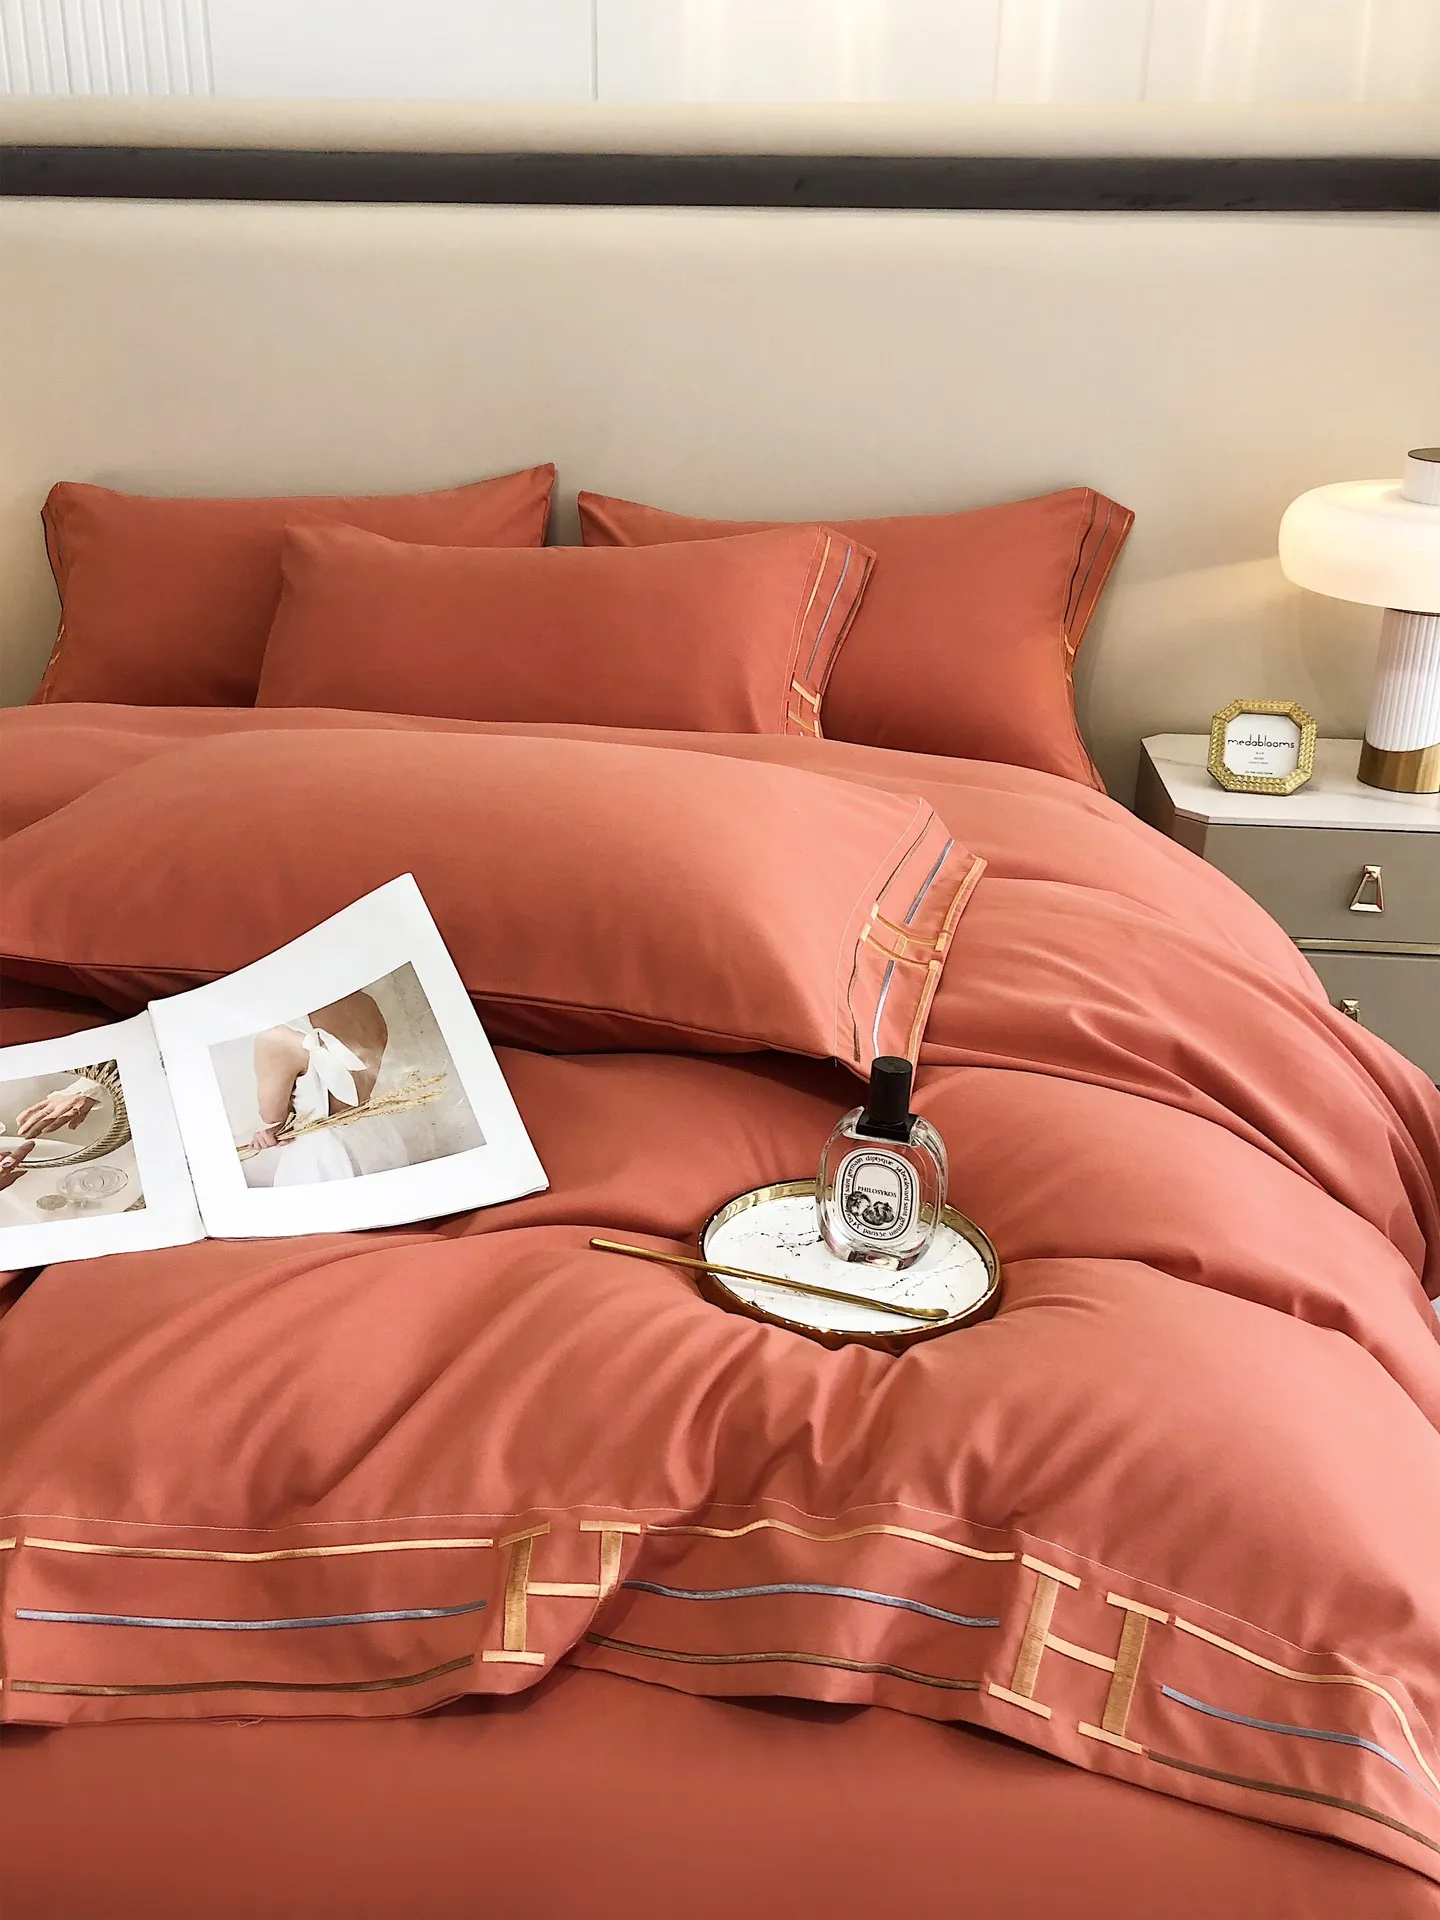 Conjuntos de cama de luxo conjuntos de alta qualidade Days seda algodão elegância cores soft cama de cama conforto capa de colcha com bordado